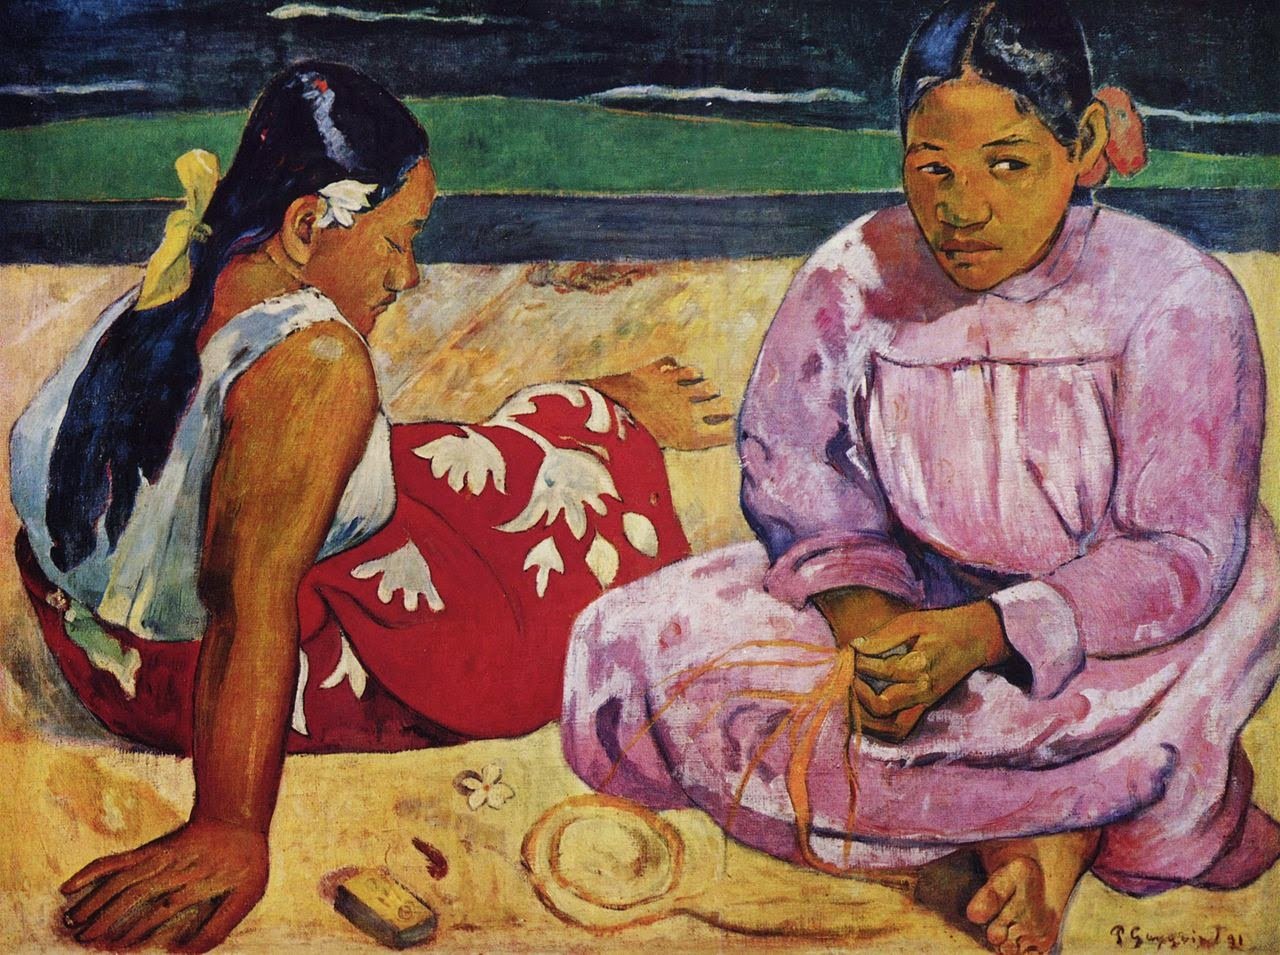 Paul Gauguin, Tahitian Women on the Beach, 69 _ 91 cm, oil on canvas, 1891, Mus_e d'Orsay